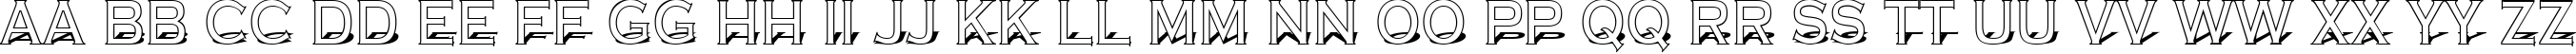 Пример написания английского алфавита шрифтом a_CopperGothTitul3D